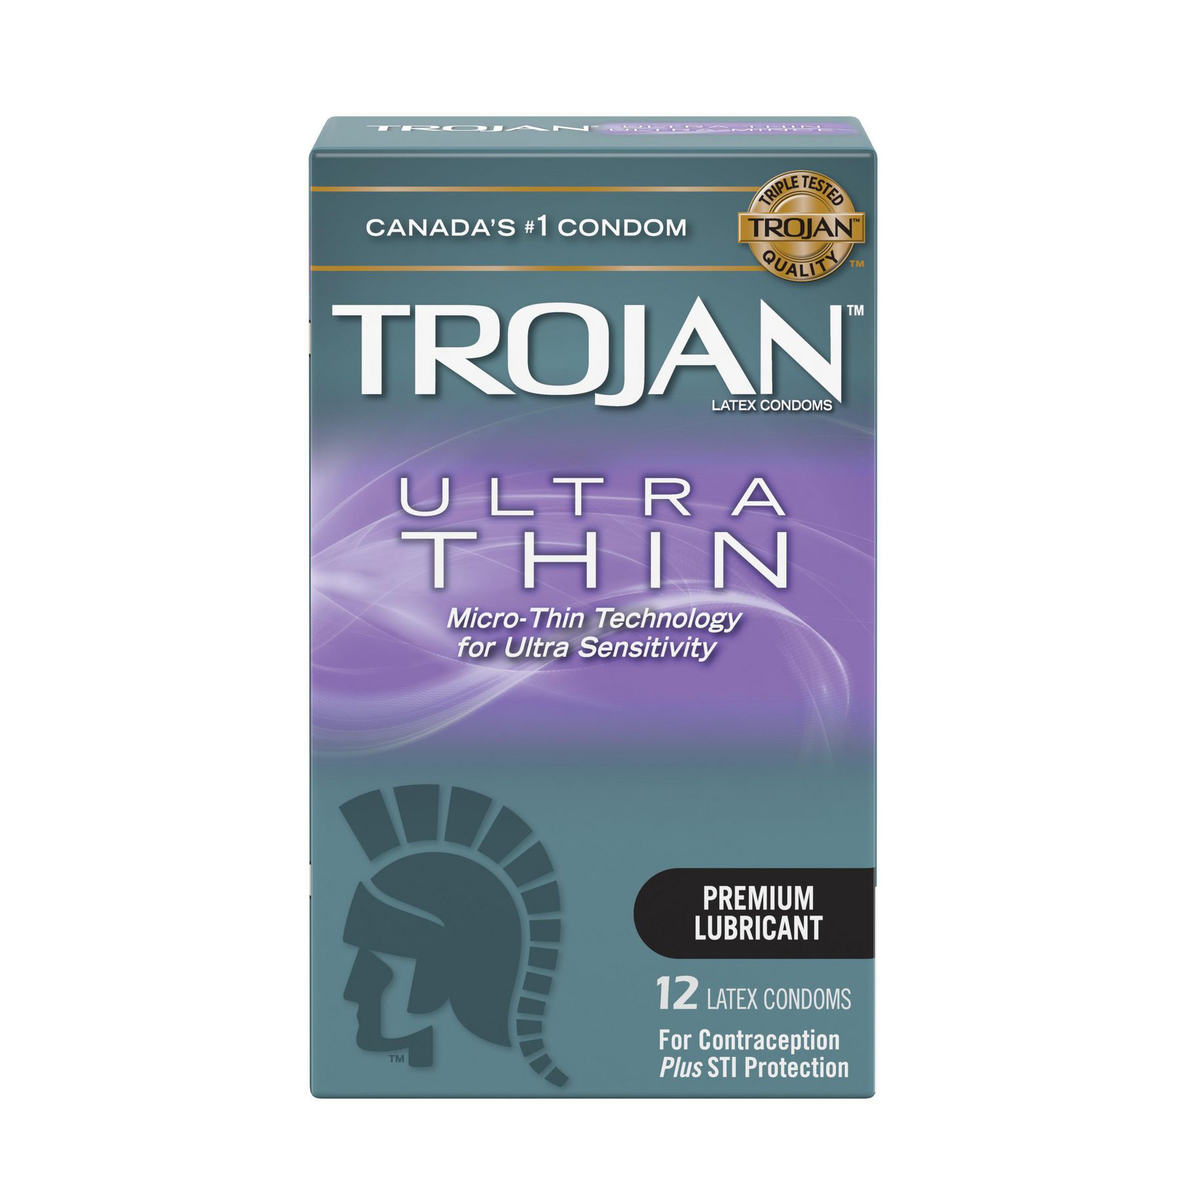 Trojan® Ultra Thin - Trojan Brands